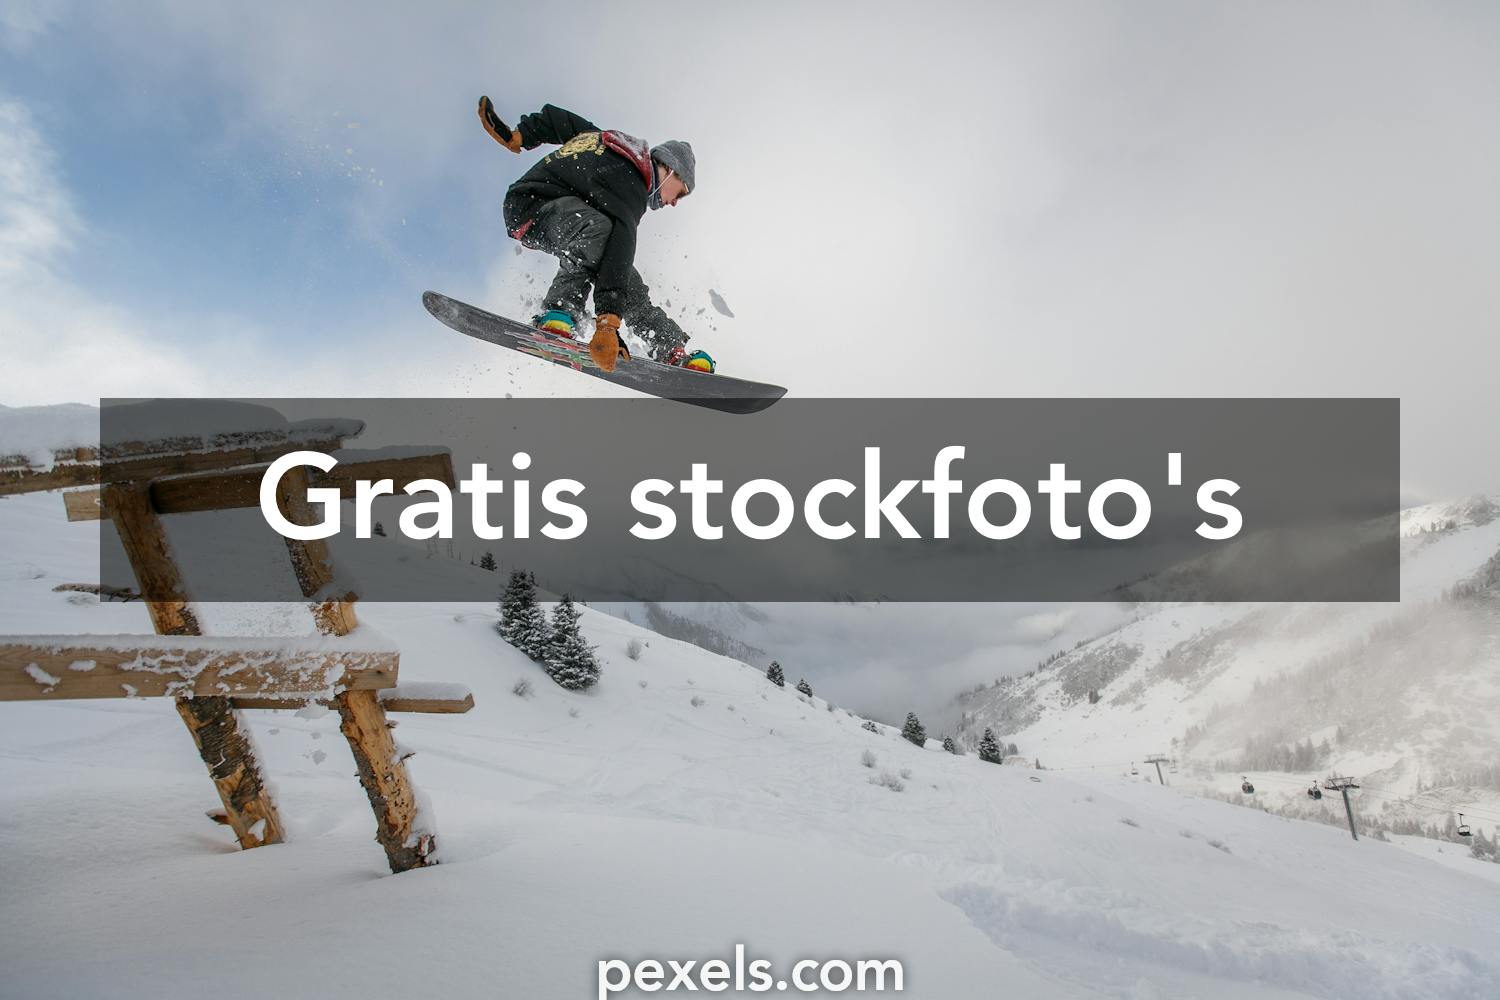 werkloosheid hospita Vertrek naar 800+ beste Snowboarden foto's · 100% gratis downloaden · Pexels-stockfoto's